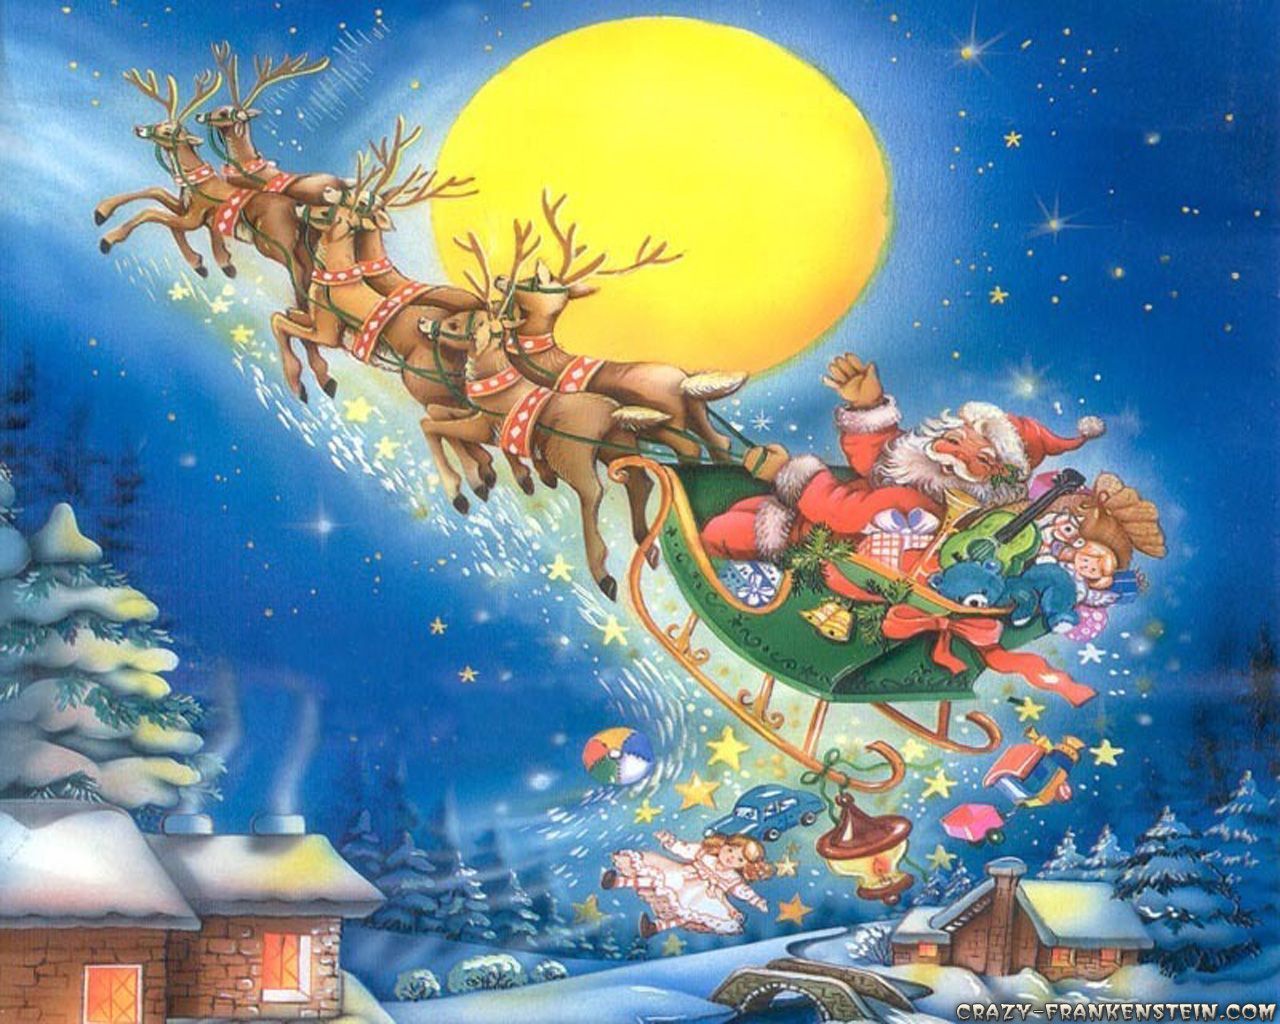 Christmas Wallpaper: Merry Christmas. Christmas wallpaper, Magical christmas, Christmas wallpaper free